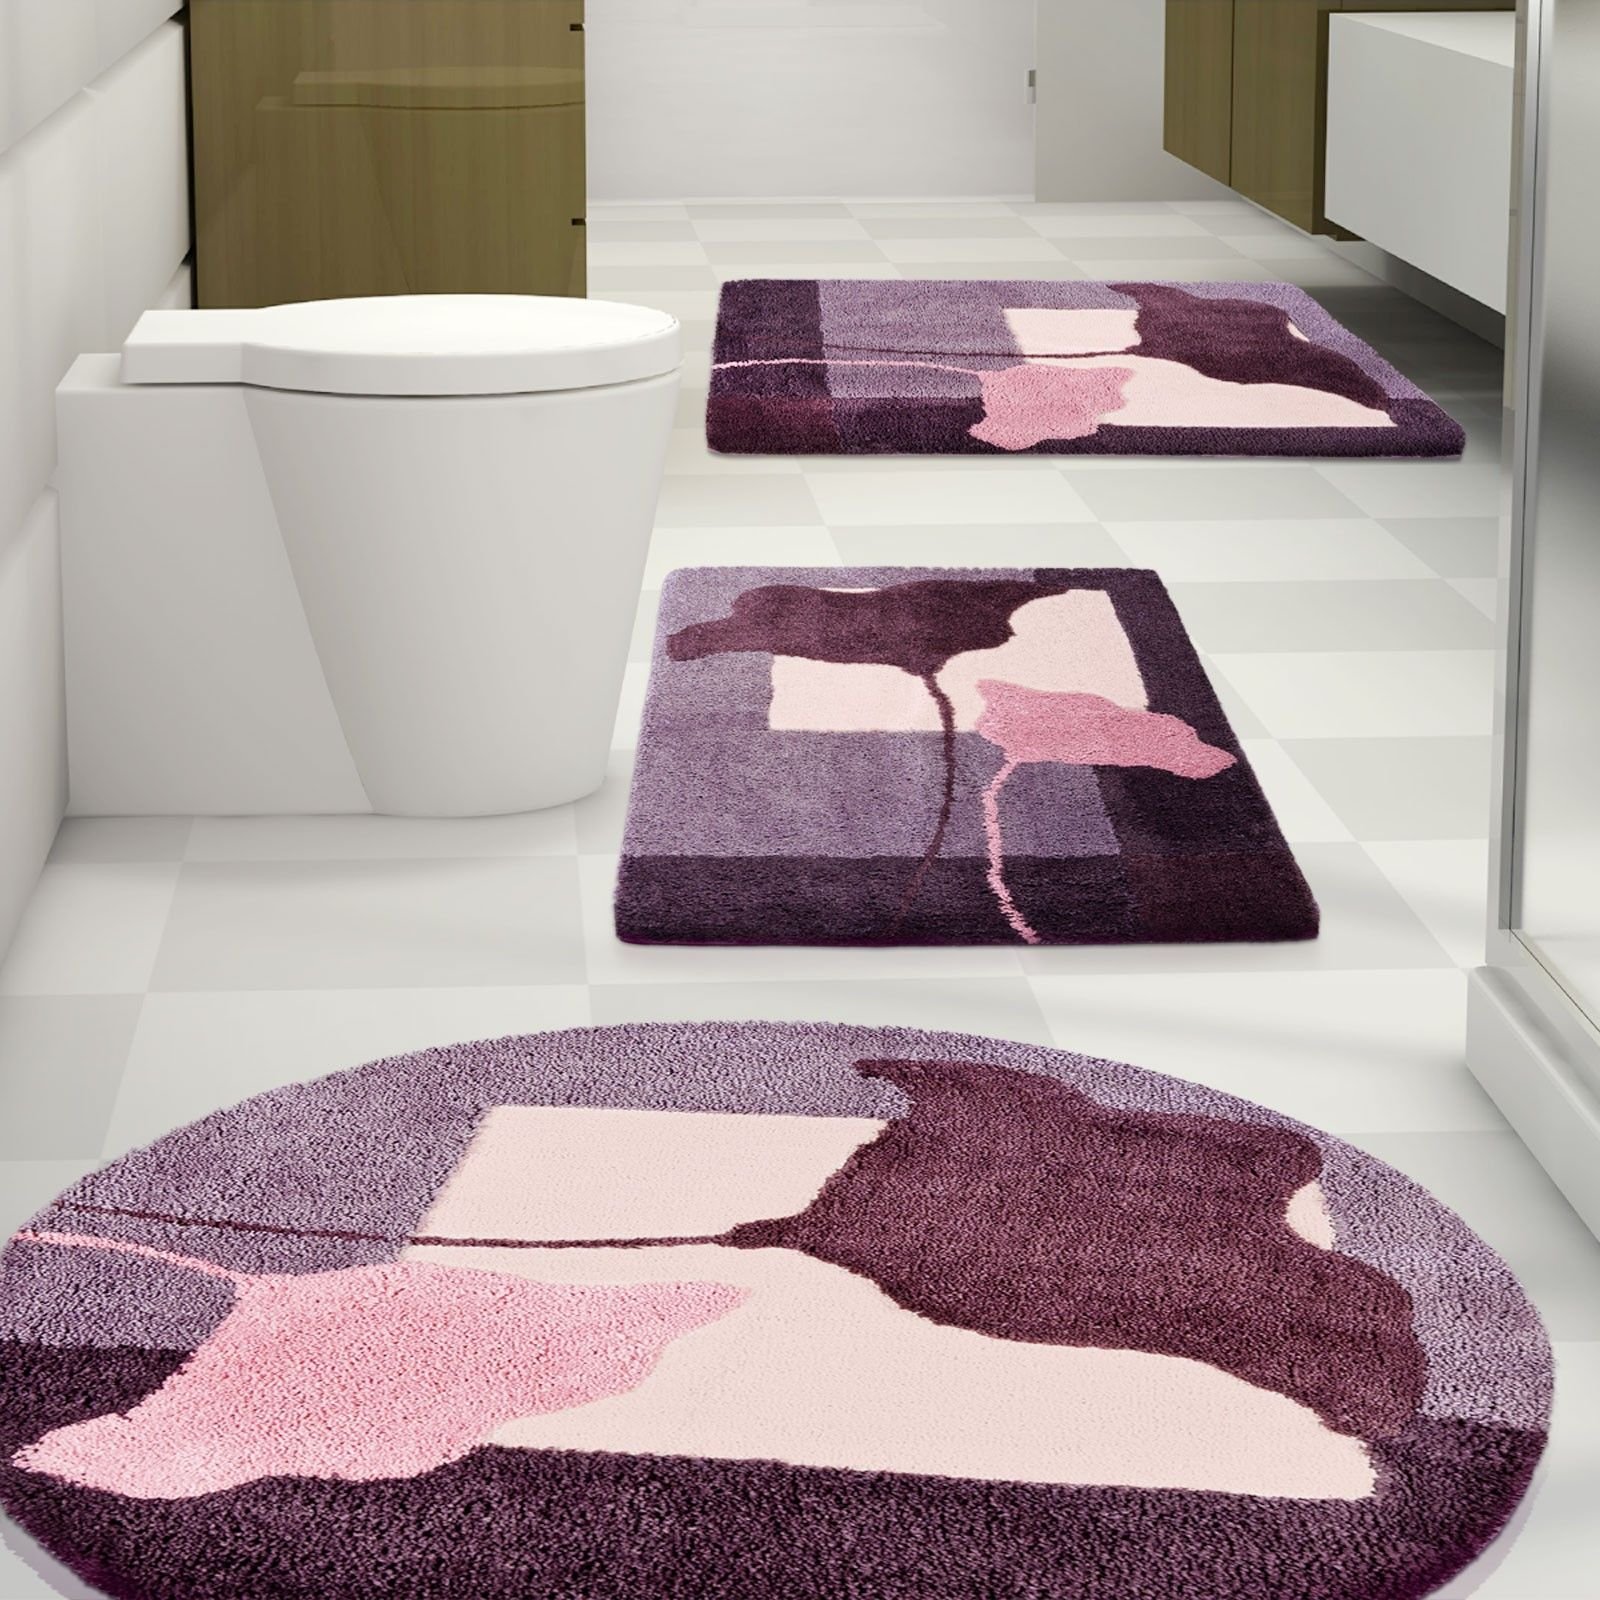 Коврики для ванной интернет магазин. Ковер Violet v850. Коврики для ванной комнаты. Дизайнерские коврики для ванной. Ковер в ванную.